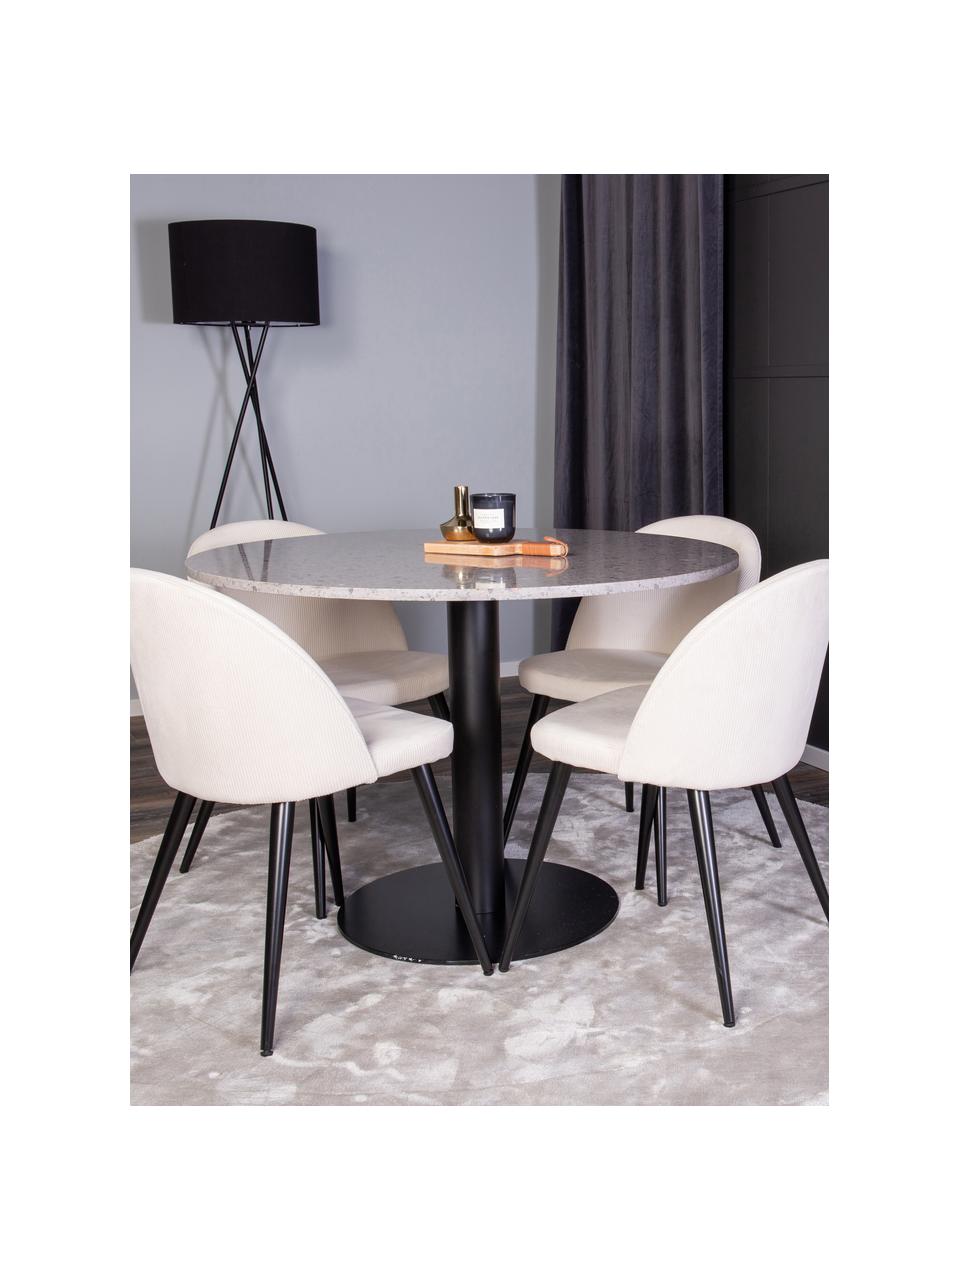 Okrúhly jedálenský stôl so stoličkami Razzia, 5 dielov, Béžová, čierna, odtiene sivej, Súprava s rôznymi veľkosťami